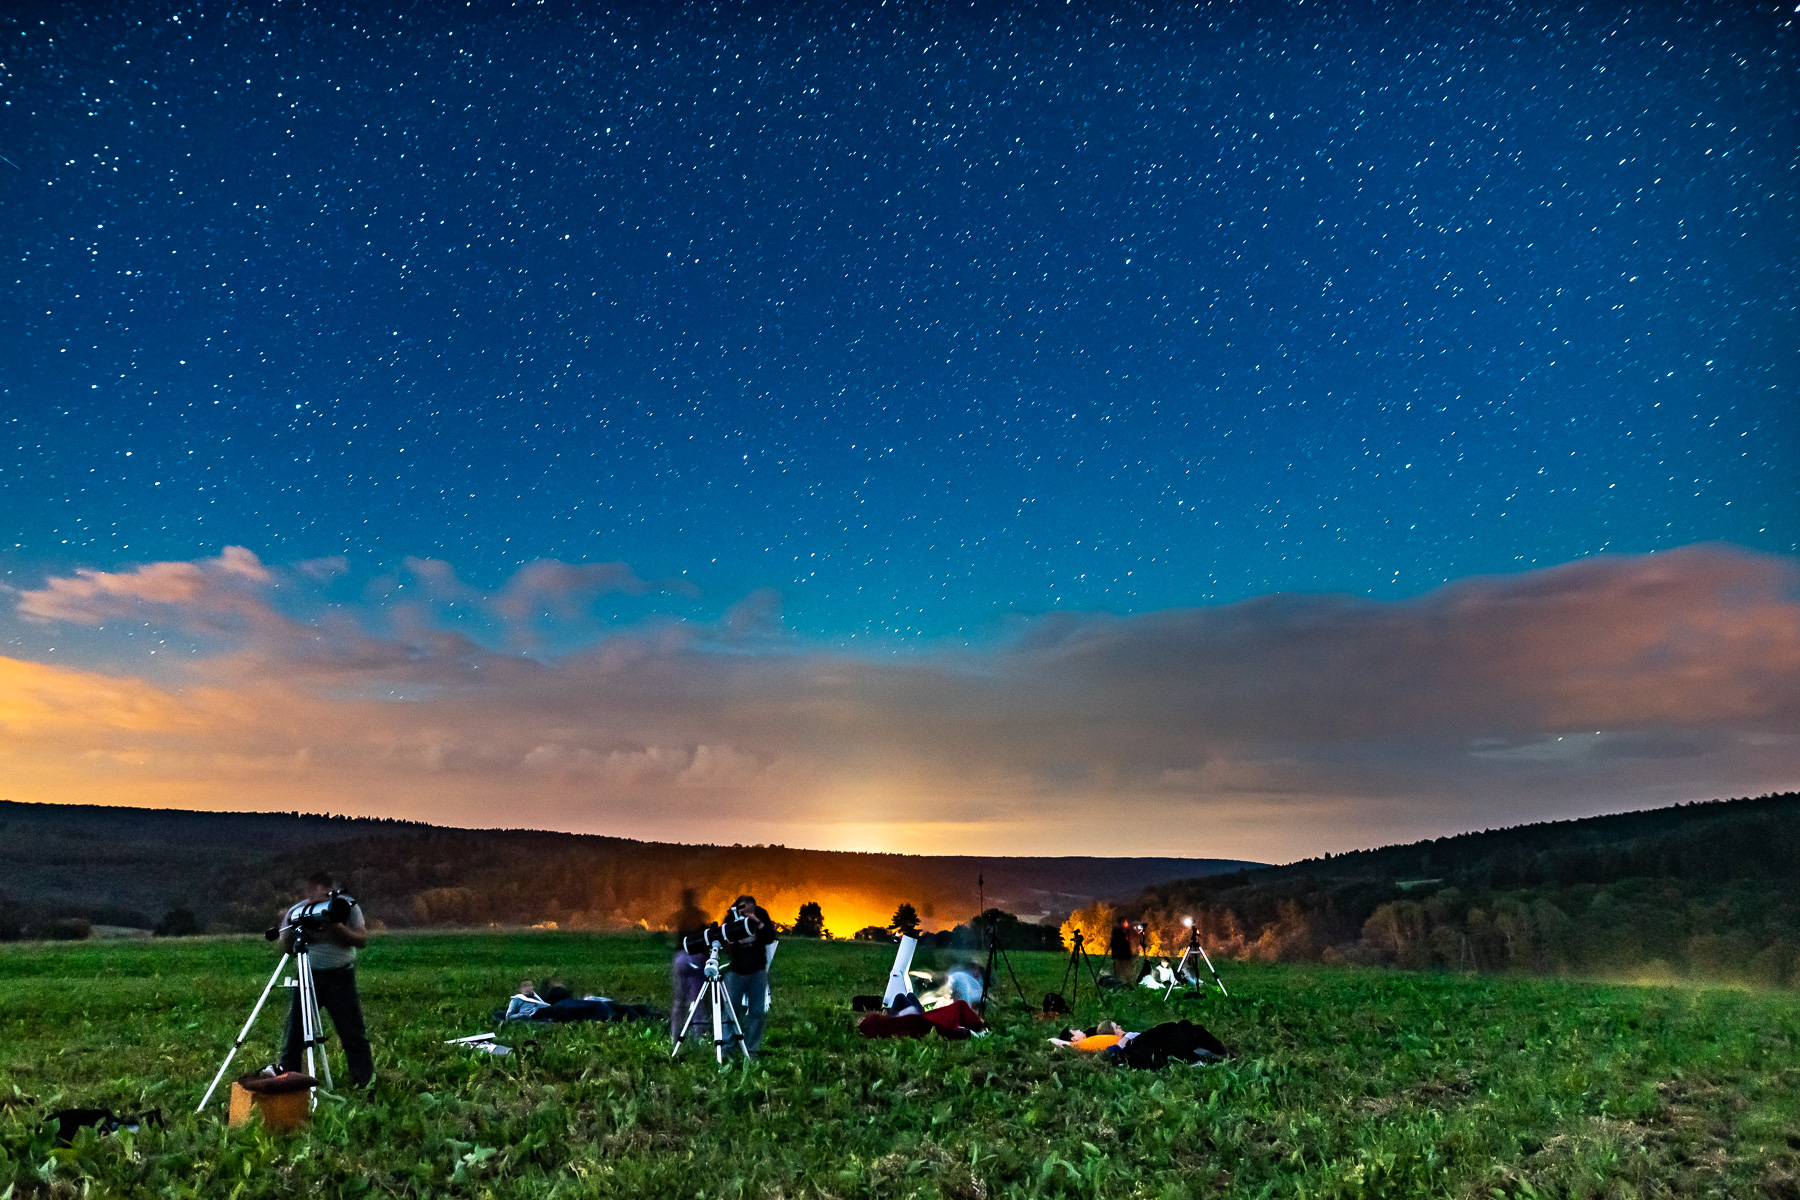 Rozgwieżdżone niebo nad górami. Na polanie grupa osób z teleskopami prowadzi obserwacje astronomiczne.